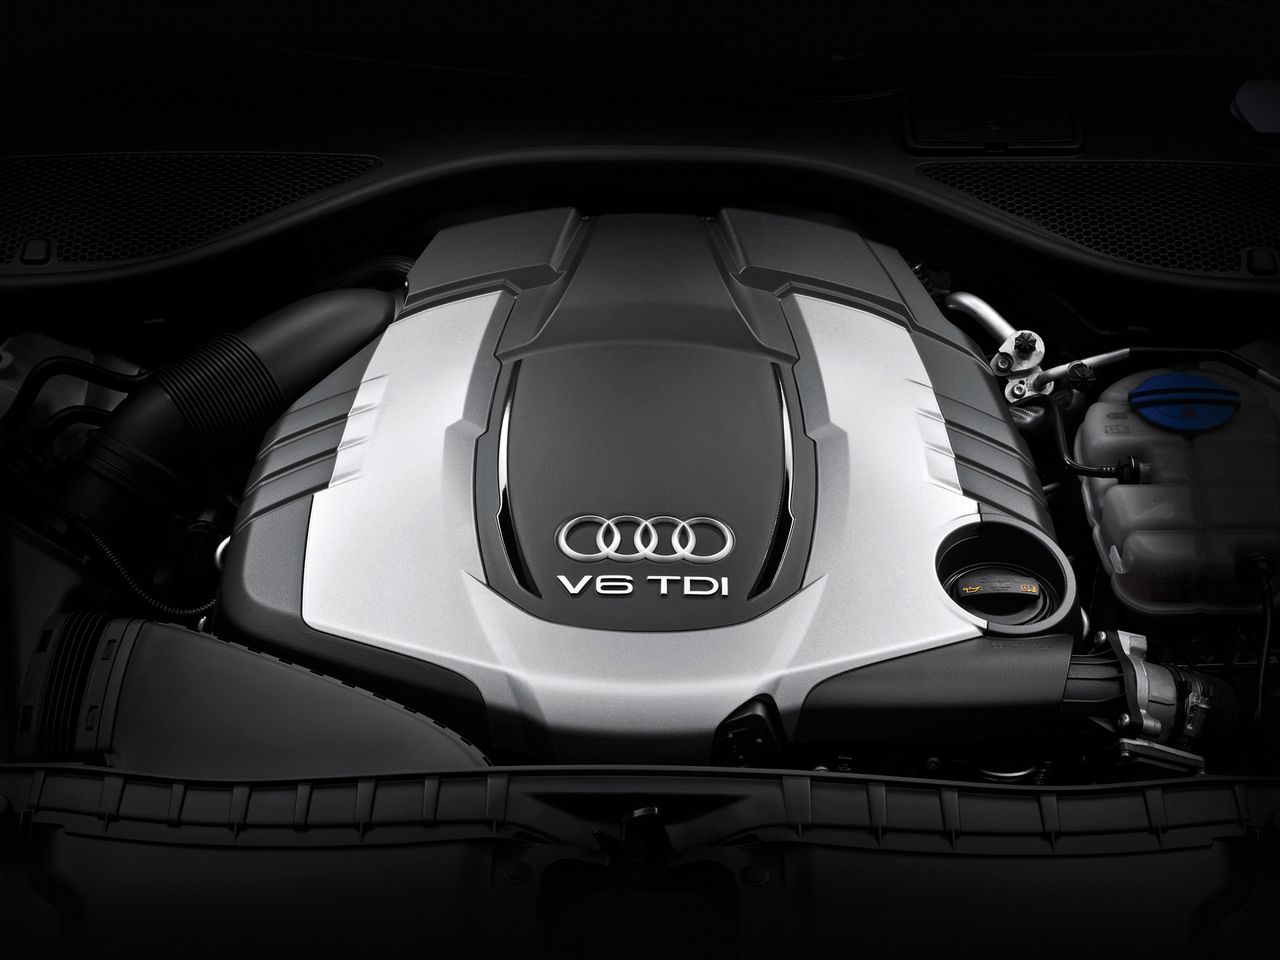 Afera dieselgate dotknie bezpośrednio również firmę Audi